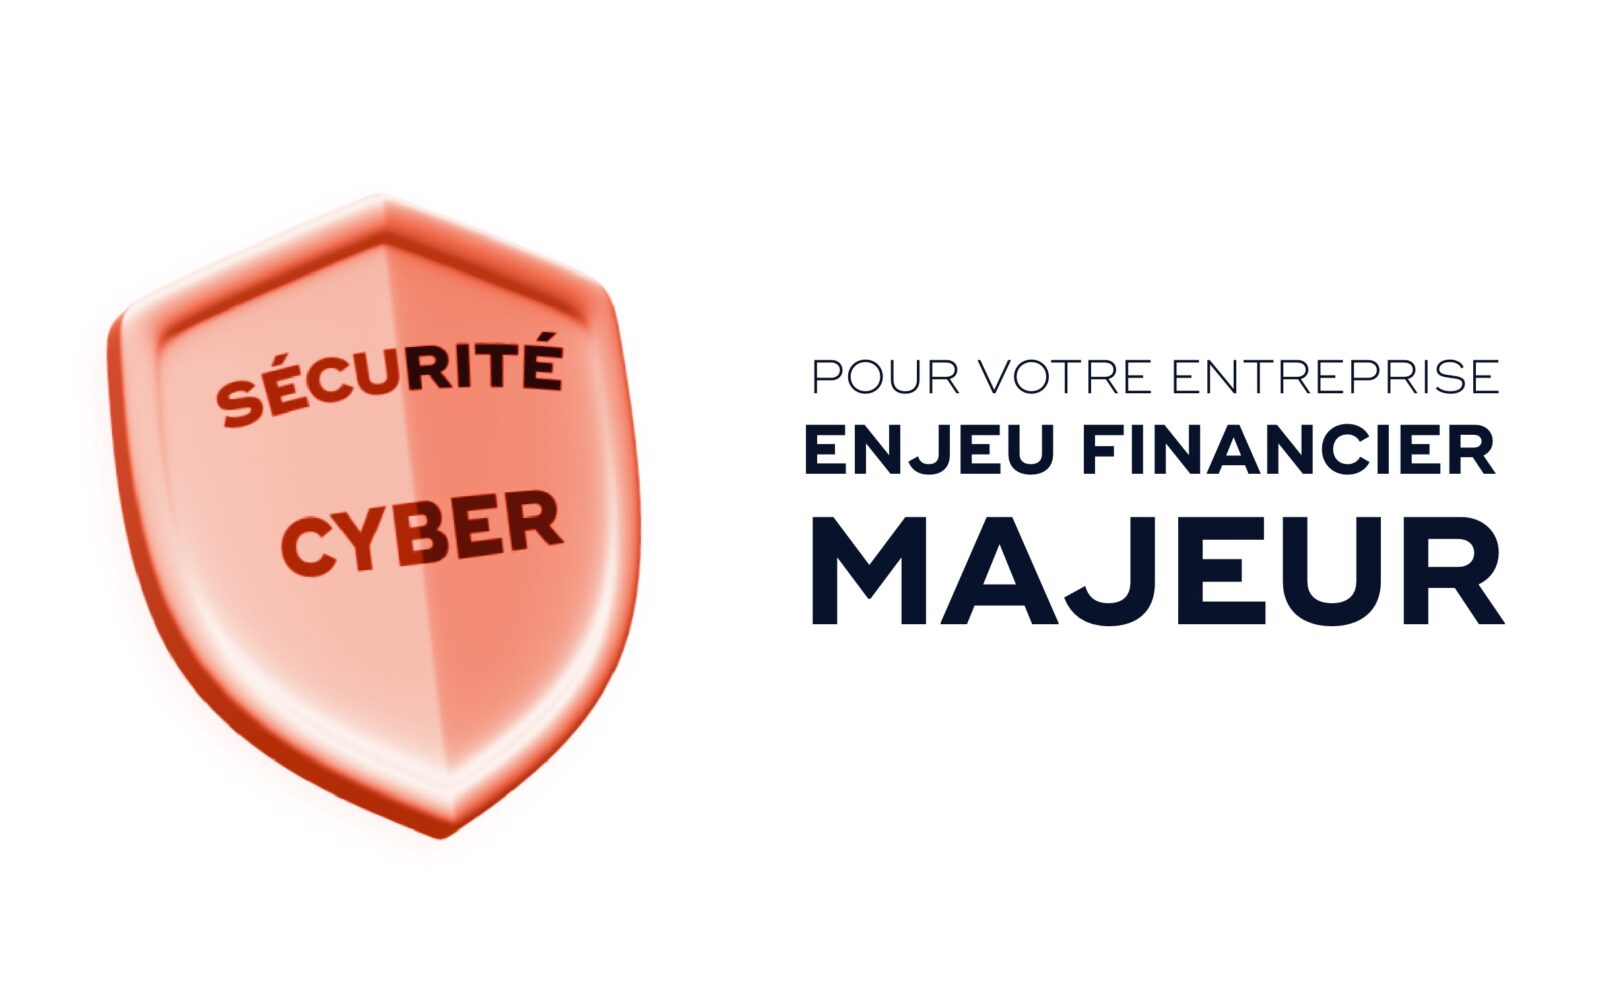 Cyber sécurité - enjeu financier Majeur Pour votre entreprise